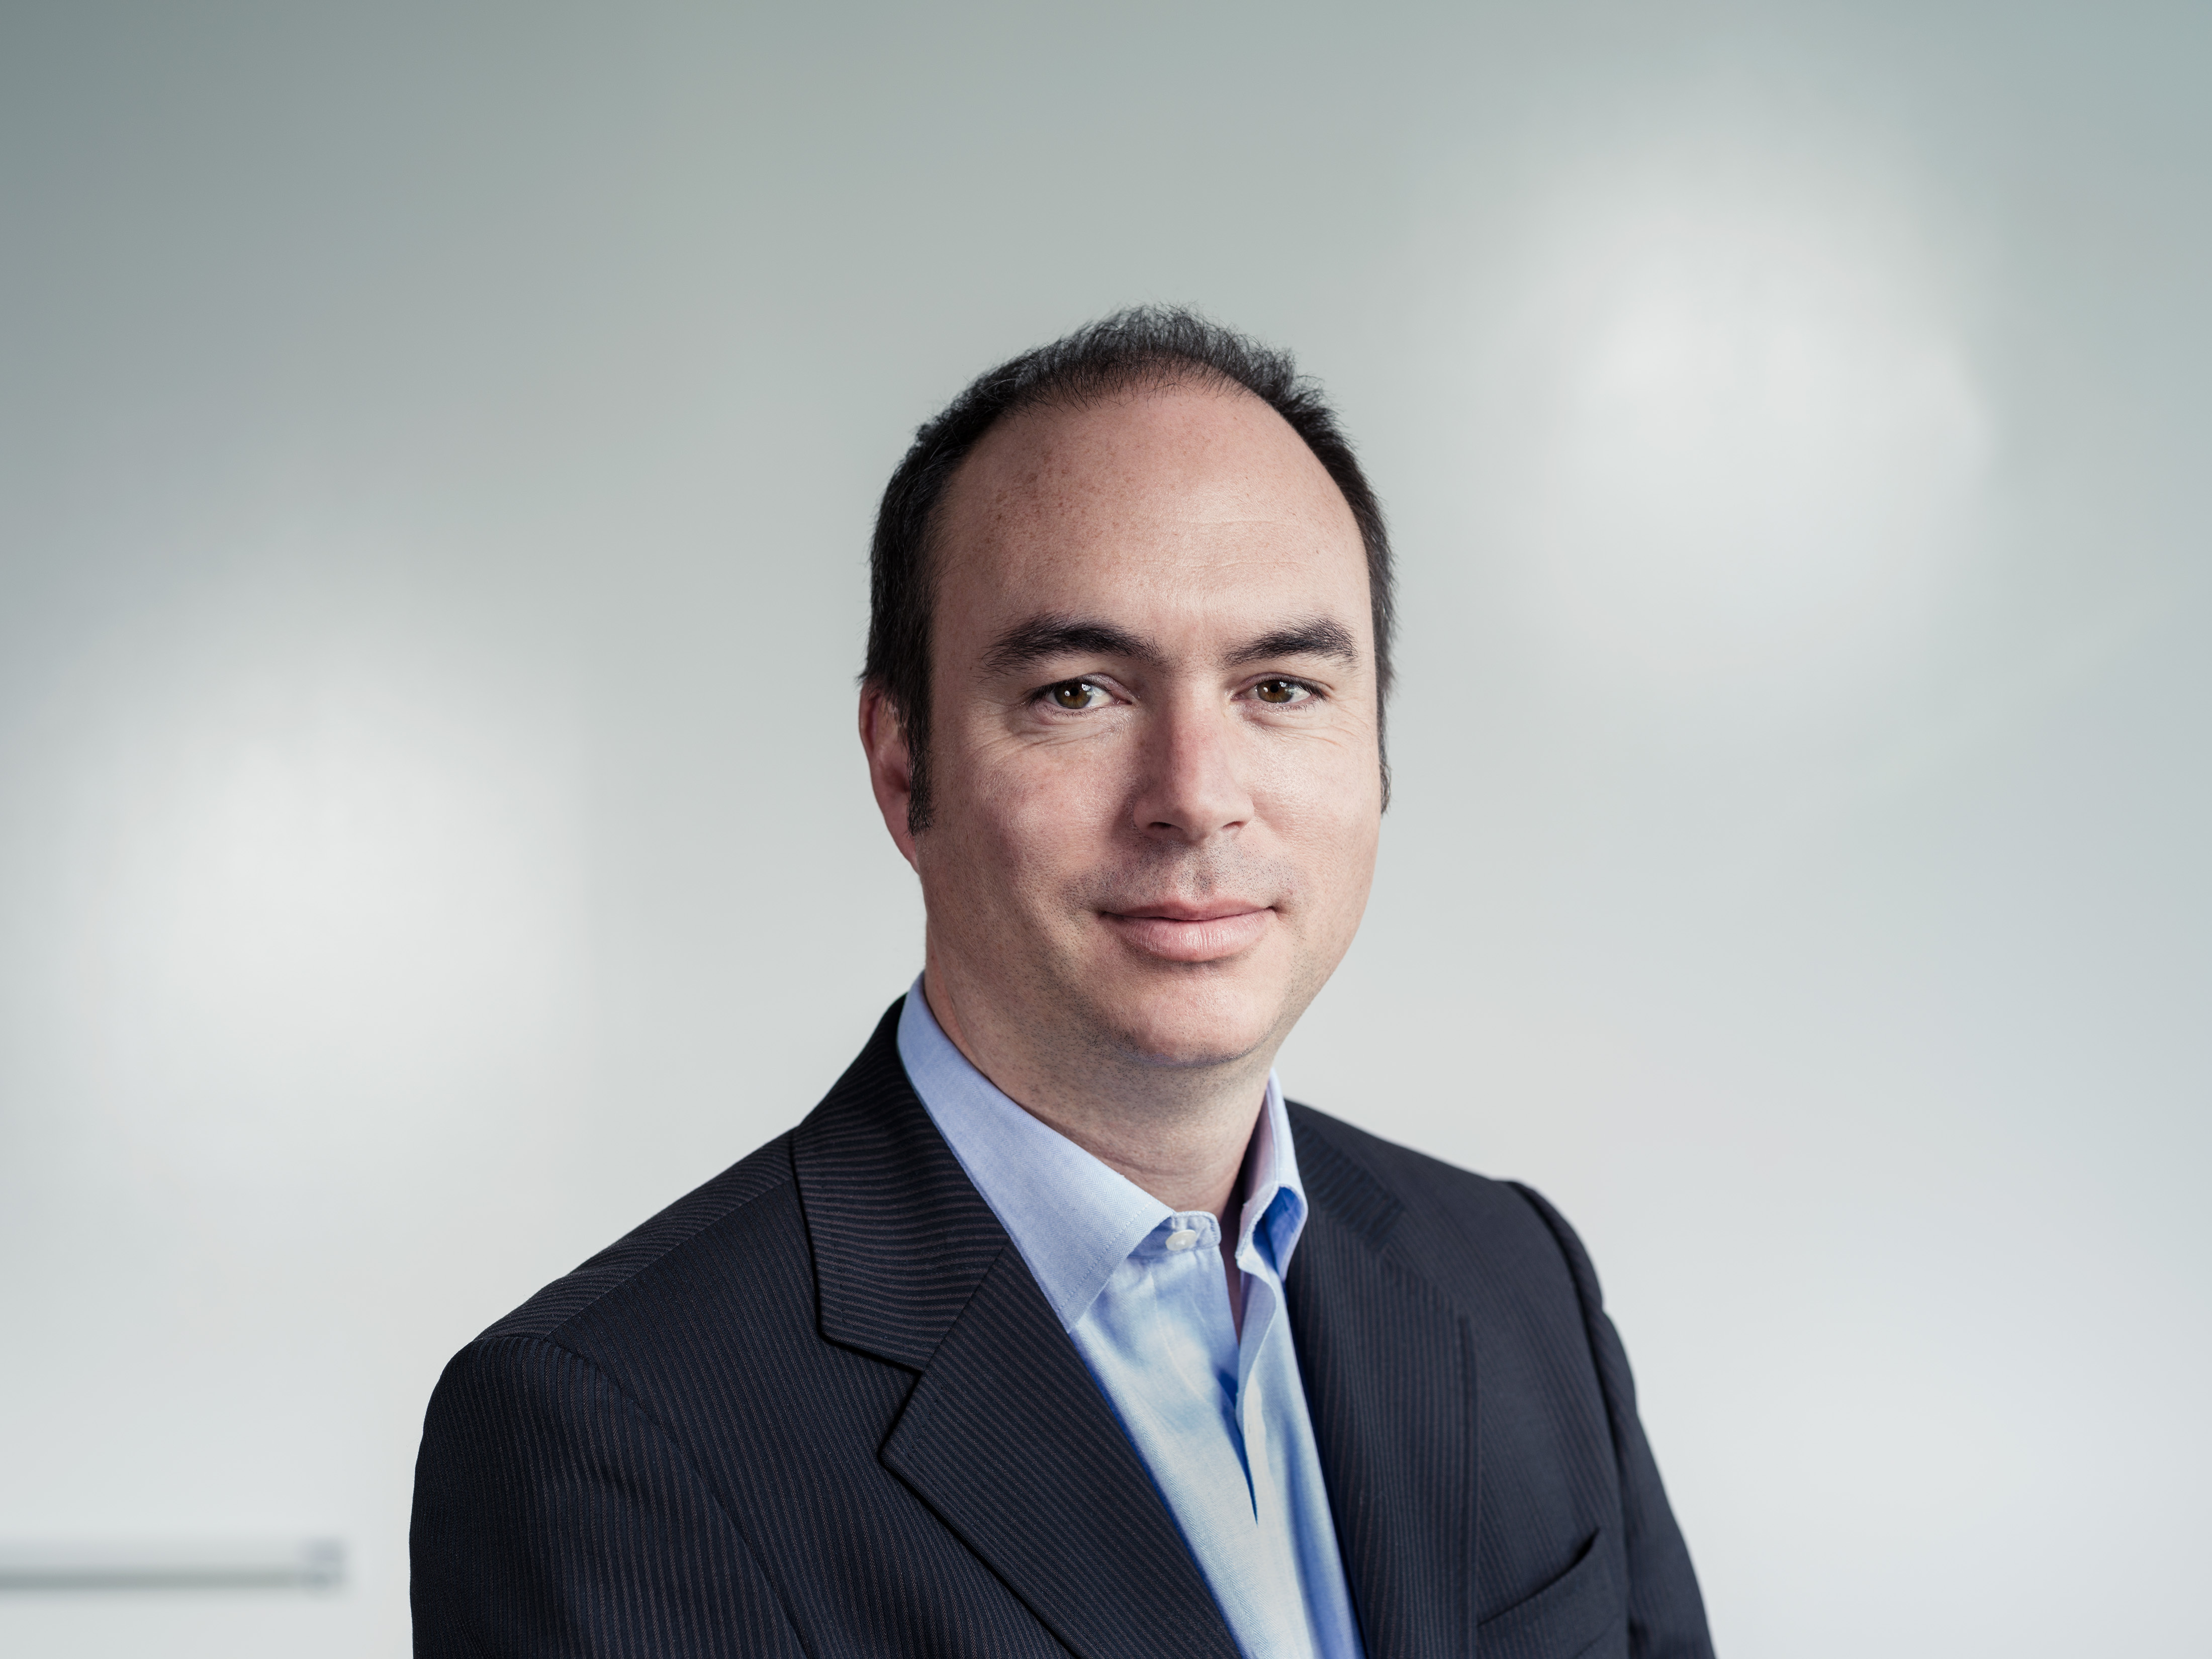 El director ejecutivo de Upwork, Stephane Kasriel, nombrado finalista del prestigioso premio EY Entrepreneur Of The Year® | Business Wire